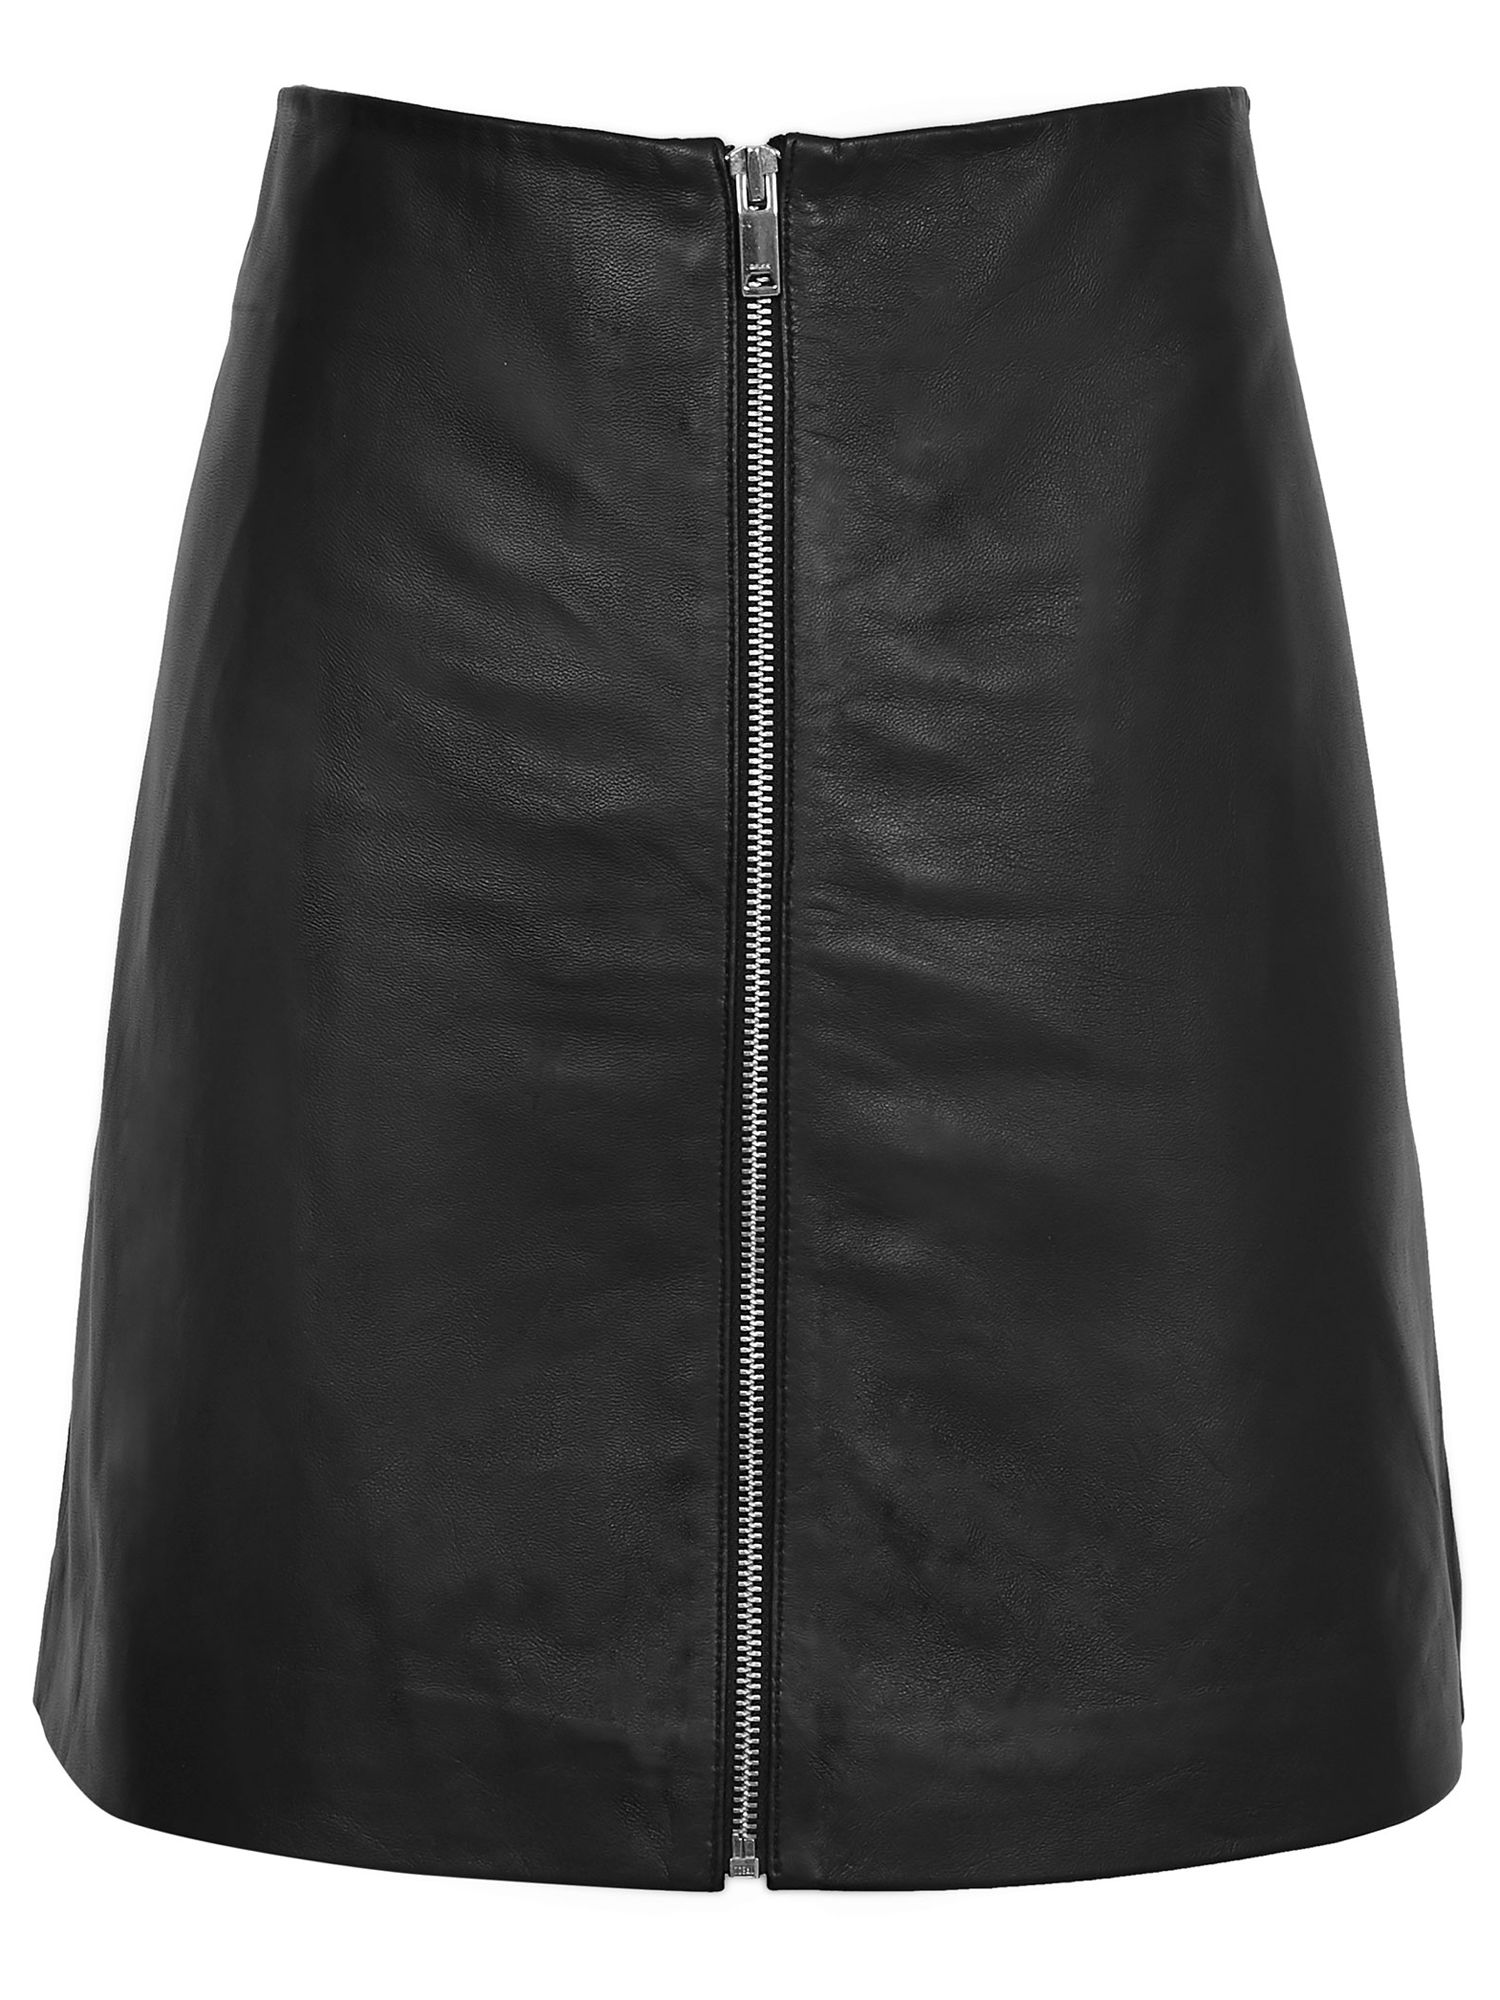 Reiss Annabelle Leather Zip Skirt, Black